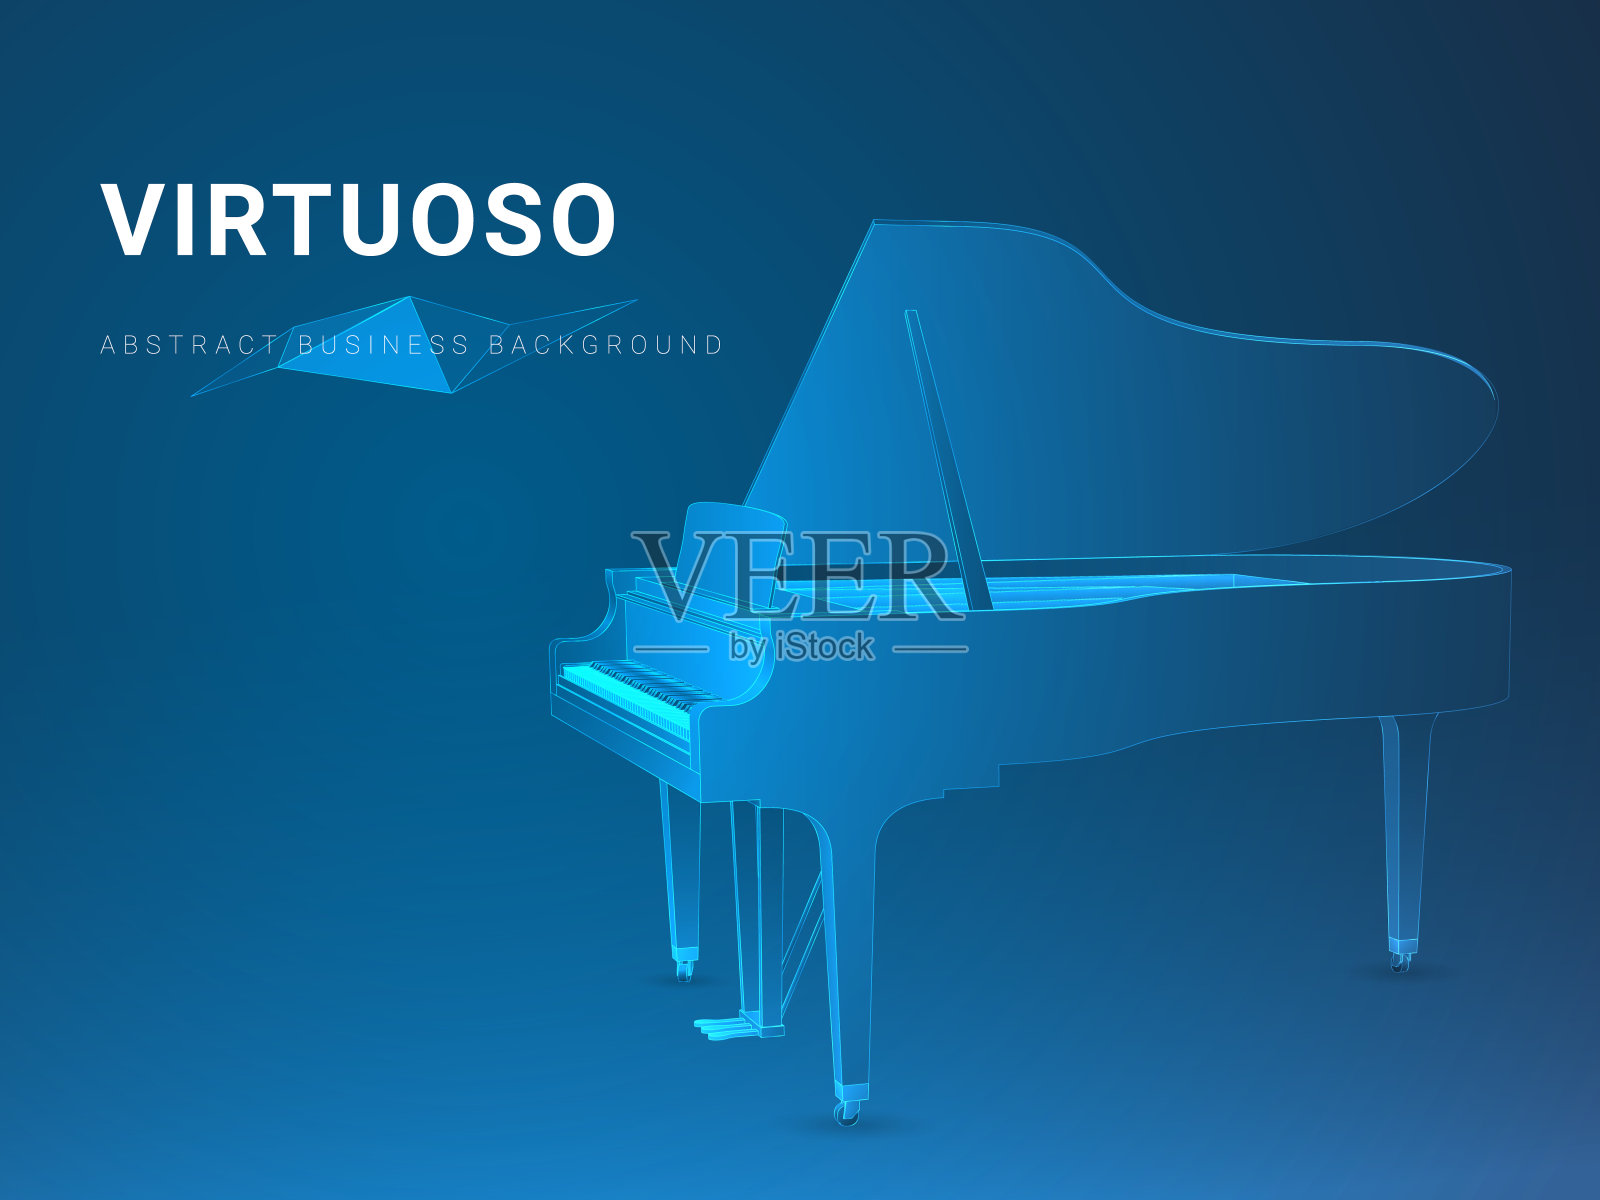 抽象的现代商业背景向量描绘了一个在蓝色背景上打开的大钢琴形状的大师。设计模板素材